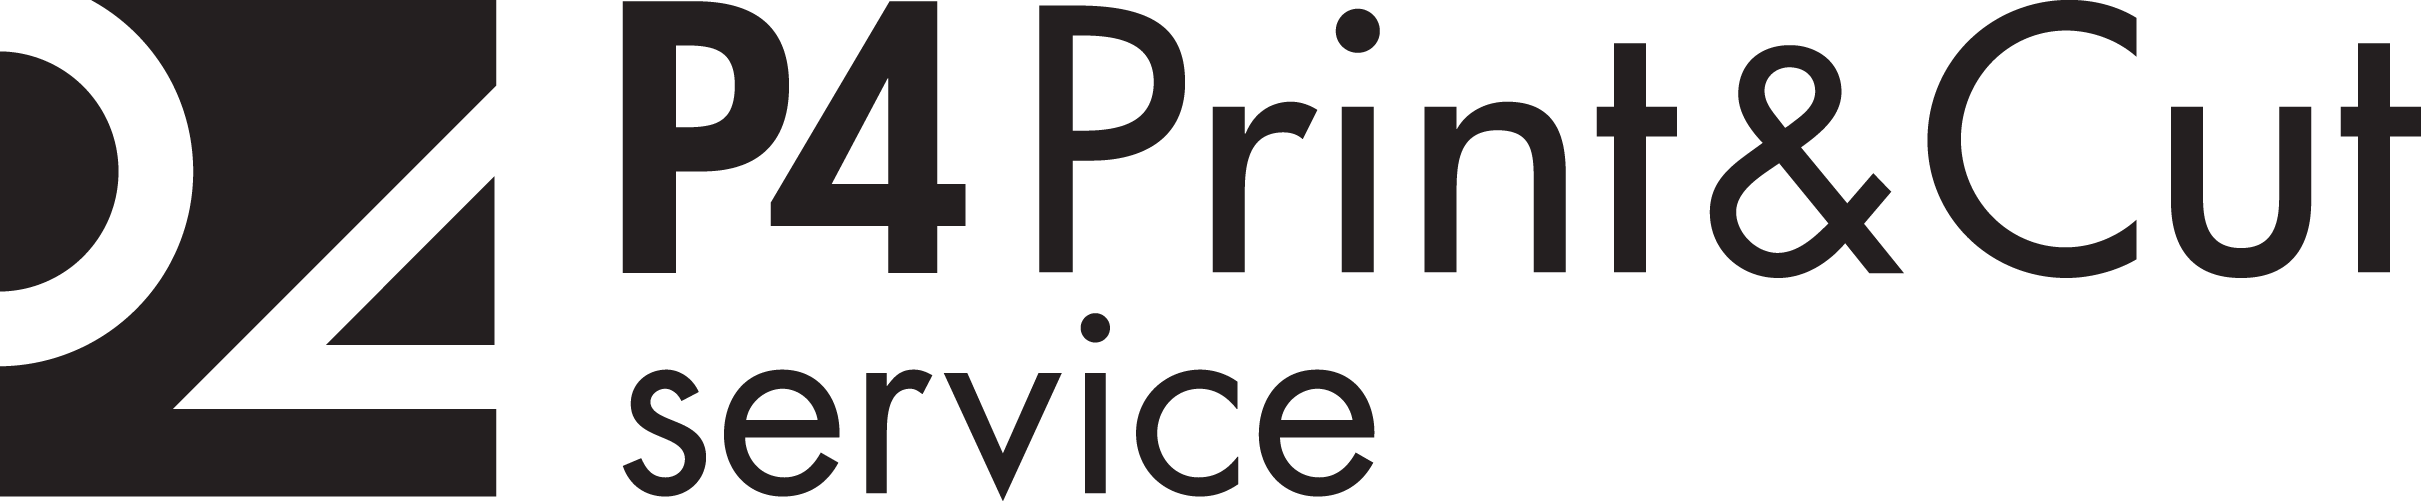 P4 Print&Cut service